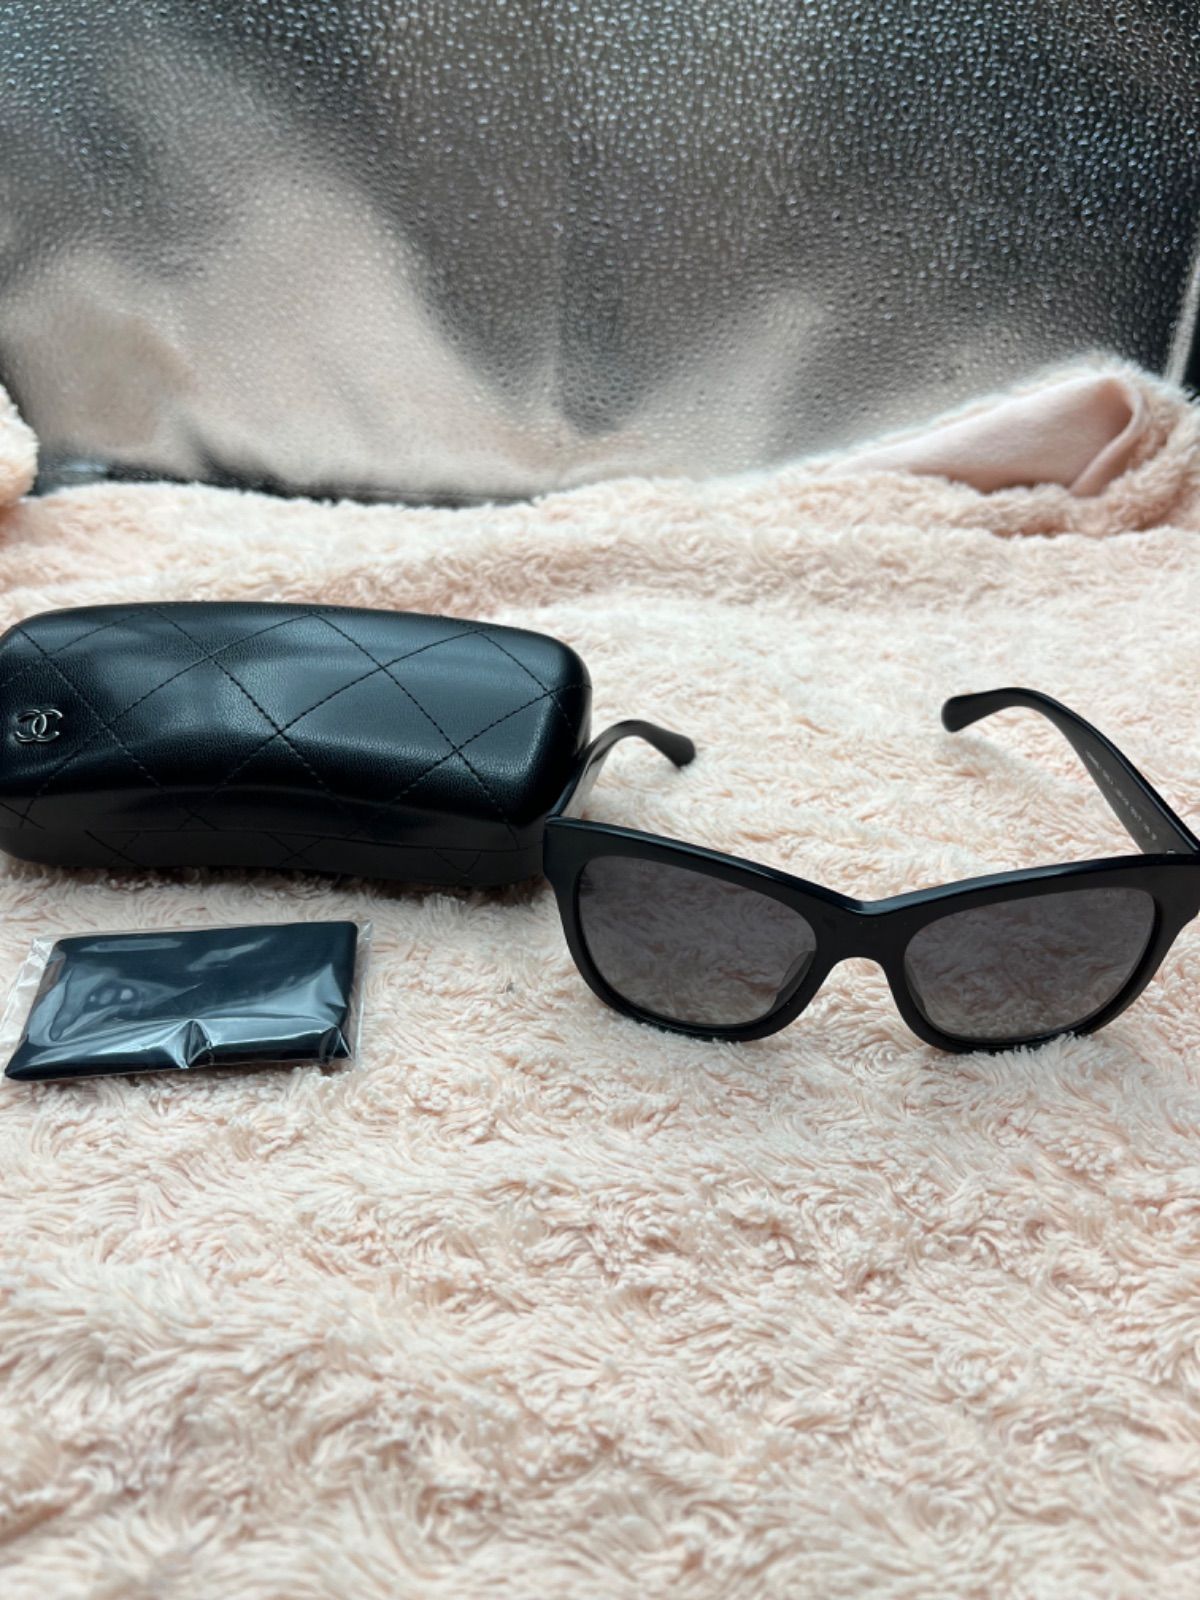 シャネル CHANEL サングラス メガネ 眼鏡 装飾品 ブランド品 ブランド ブランドサングラス オシャレ 小物 